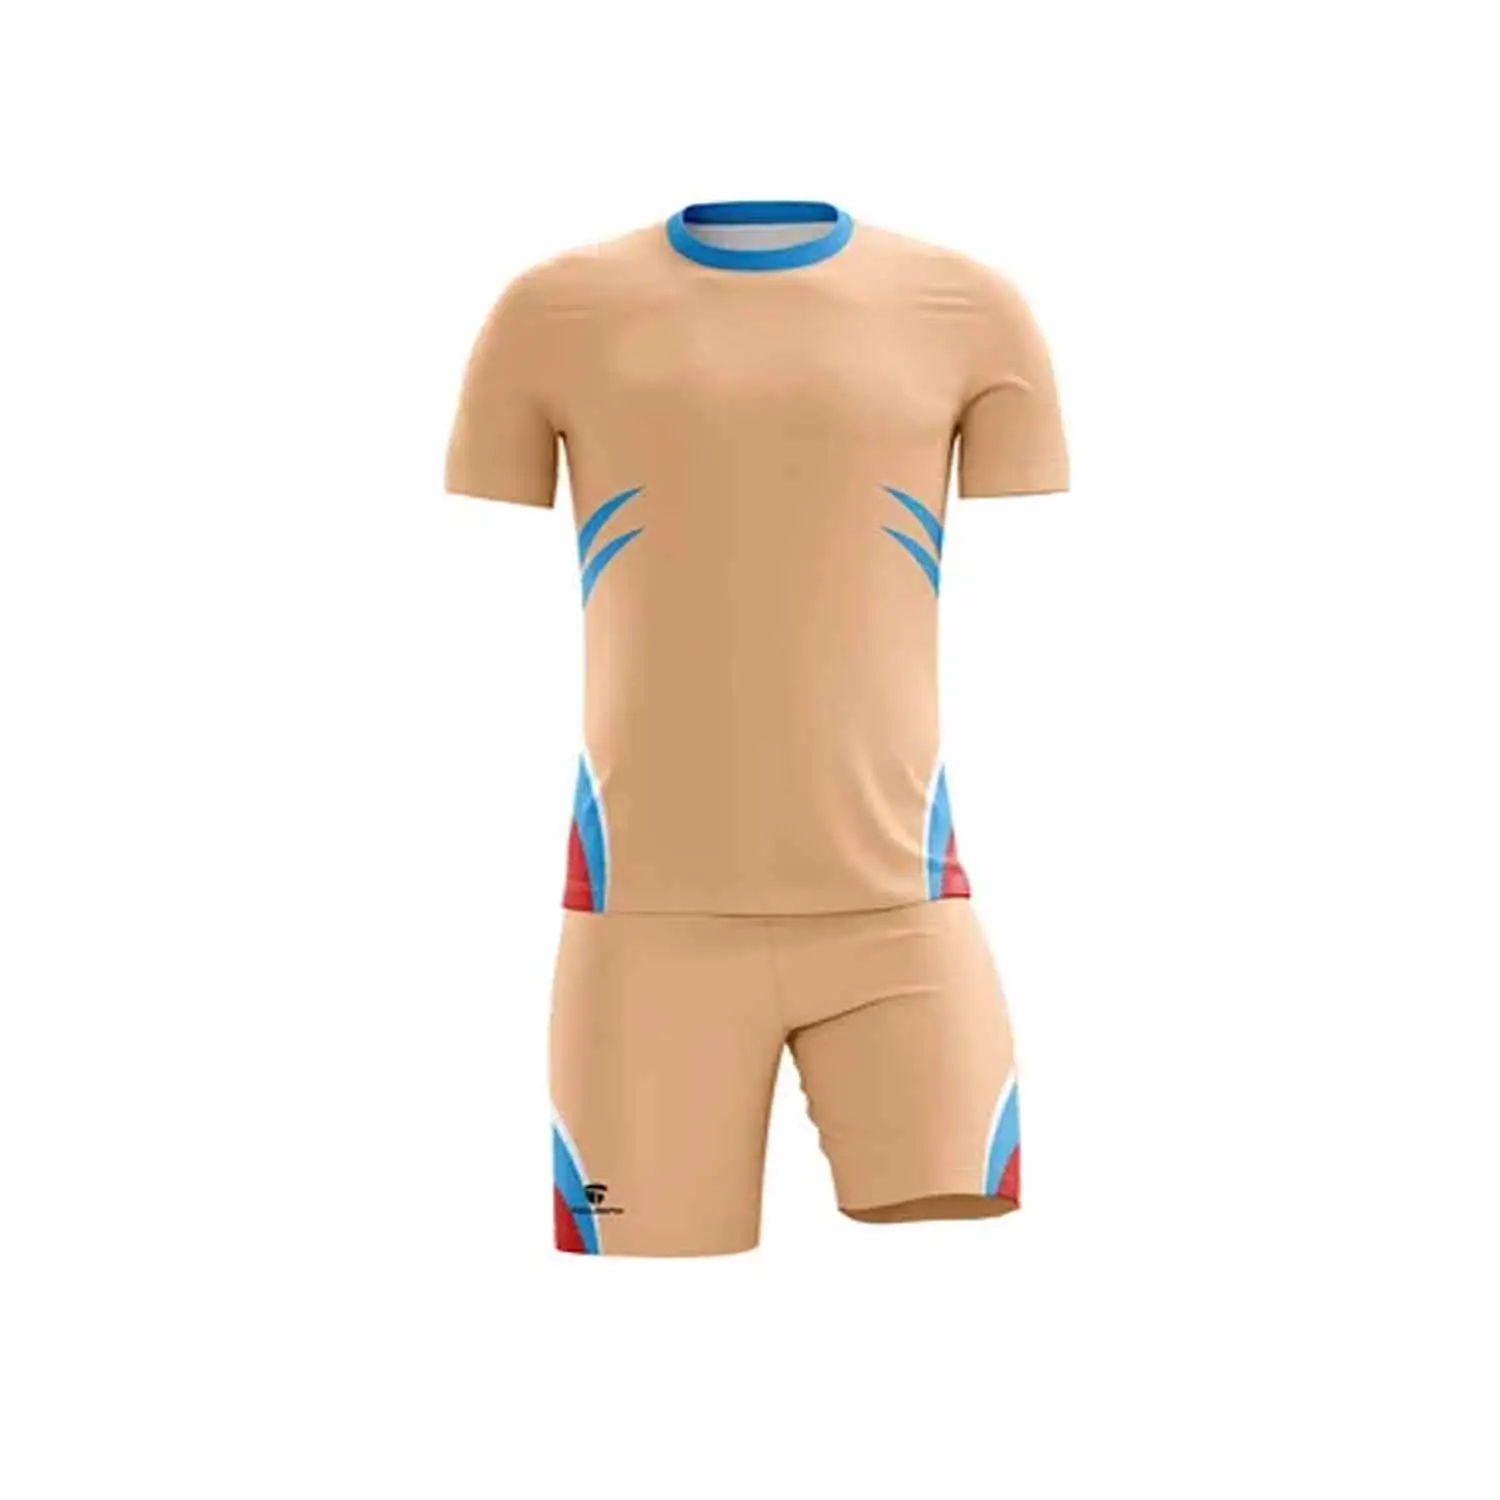 Nouveau matériel de maille de Polyester uniforme de Football d'équipe personnalisé/uniforme de Football de haute qualité sur mesure avec maillot de Baseball court